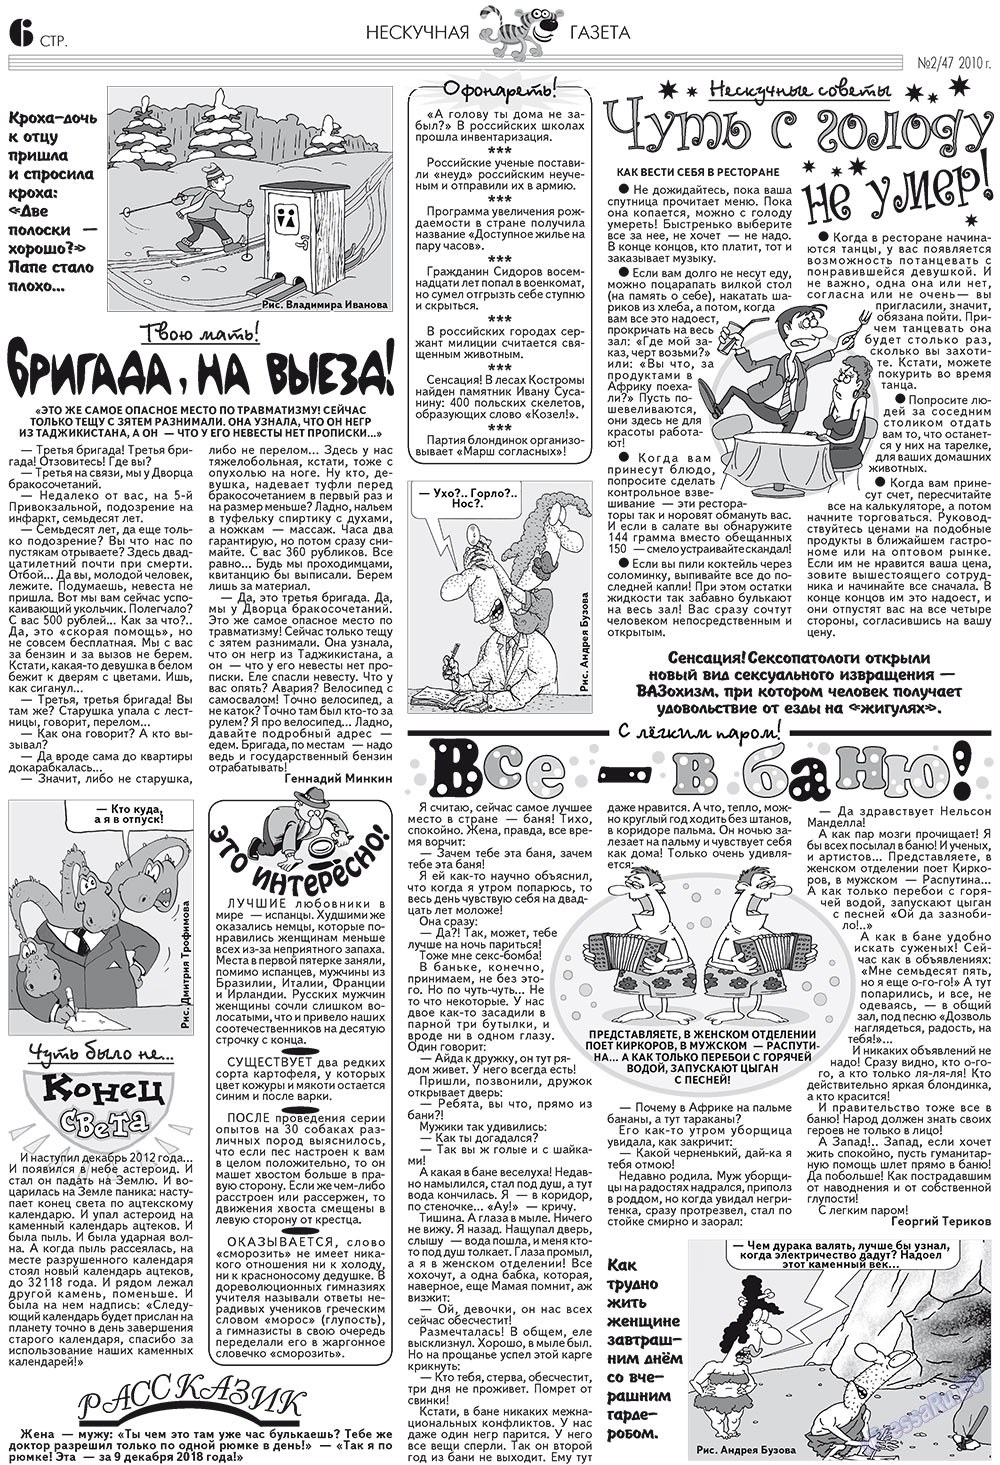 Нескучная газета (журнал). 2010 год, номер 2, стр. 6